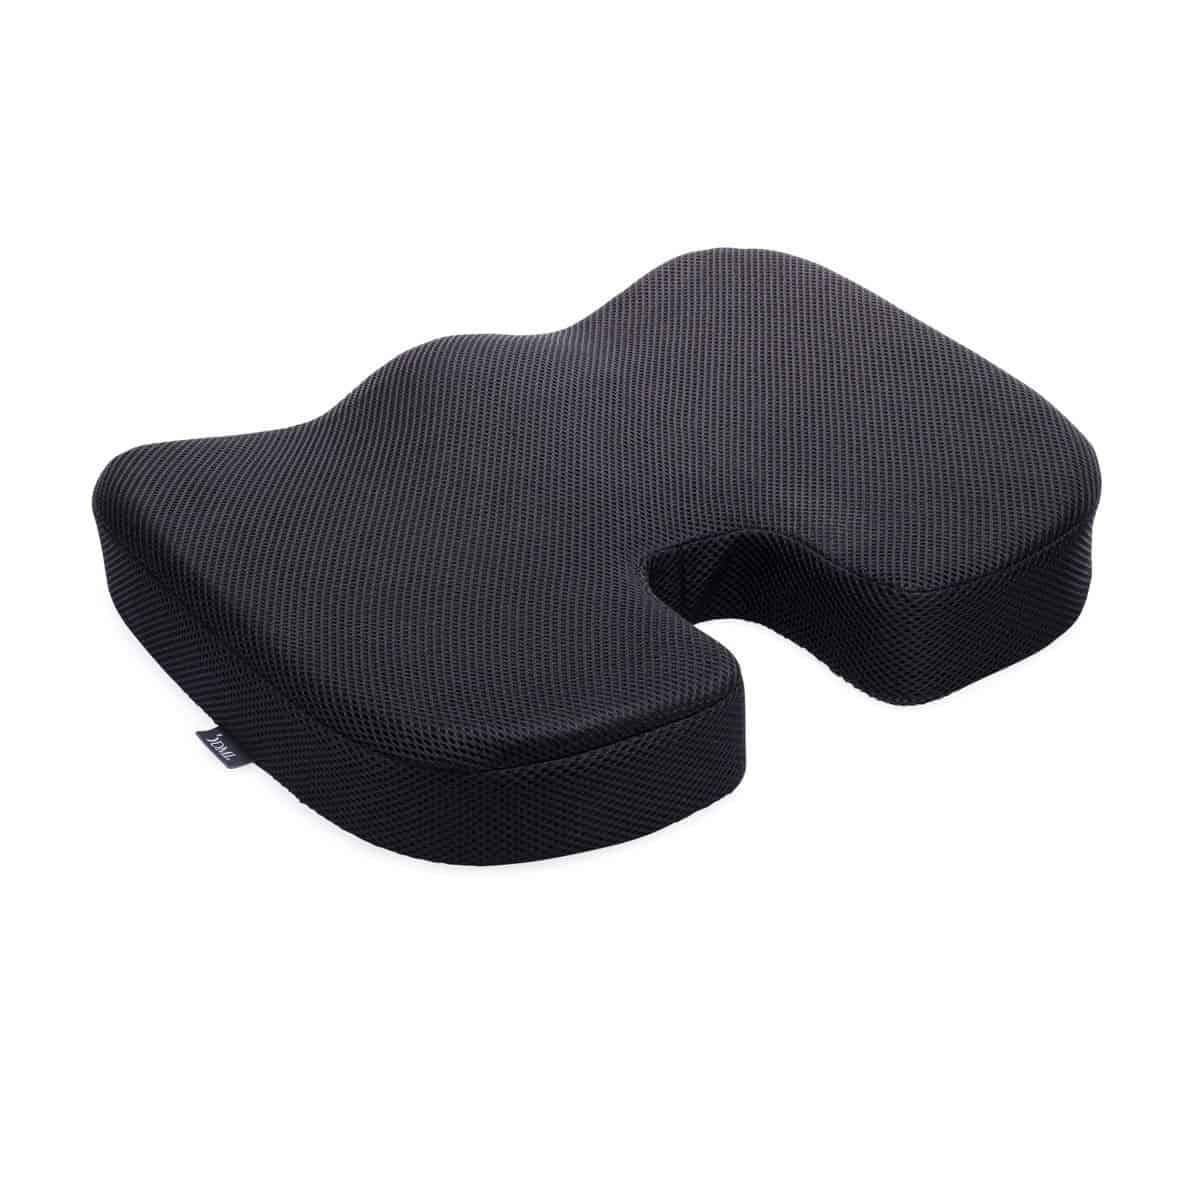 DMI Memory Foam Coccyx Seat Cushion Pillow - Black